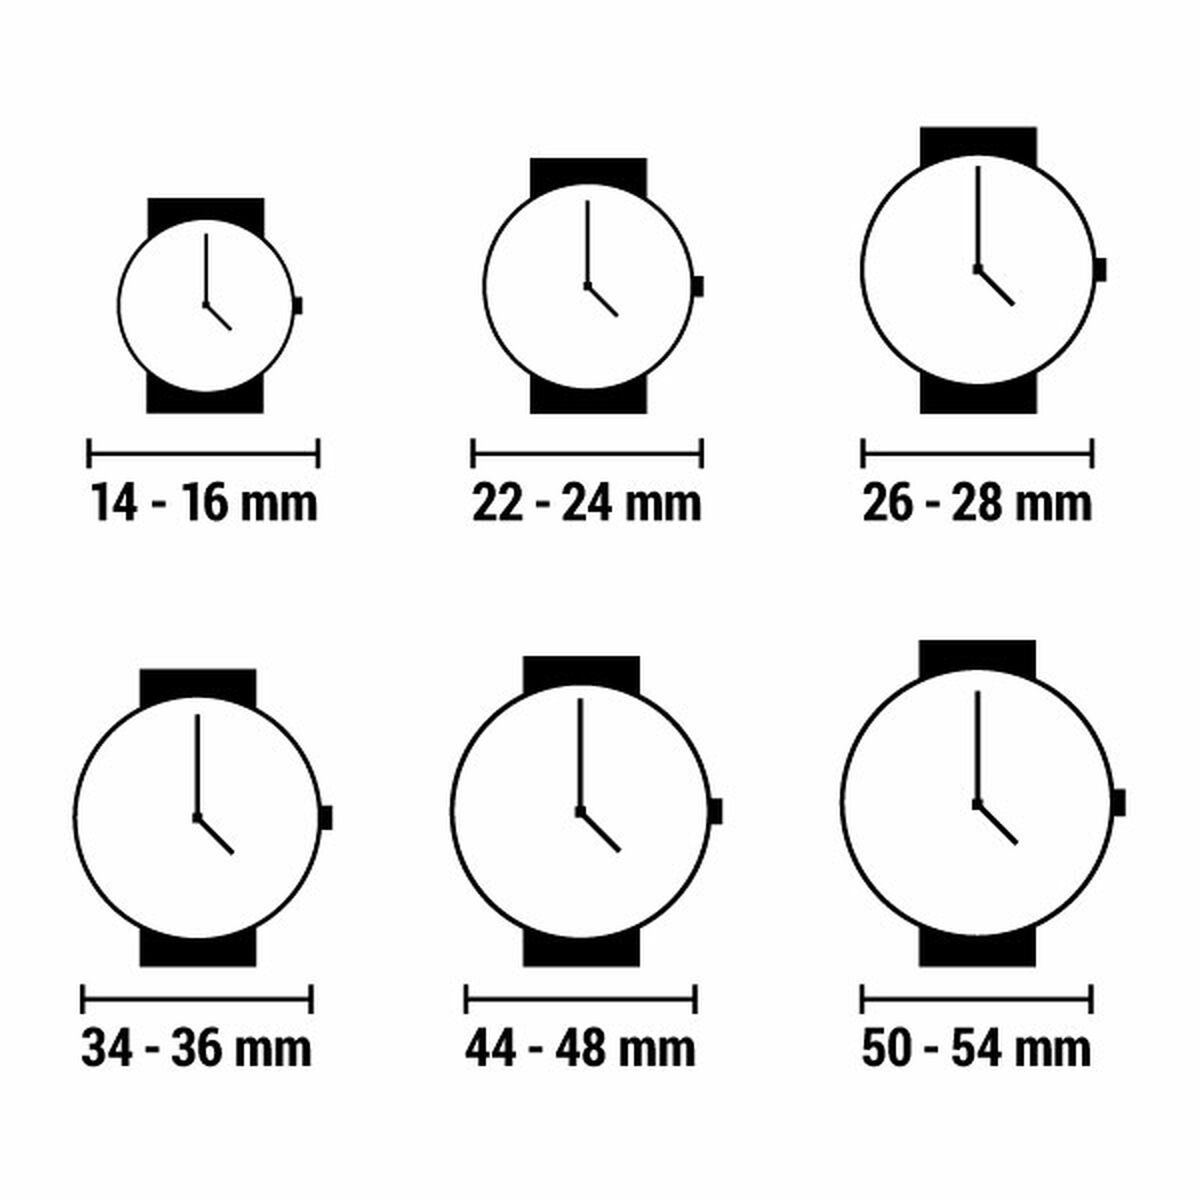 Horloge Dames Viceroy 401156-53 (Ø 32 mm)